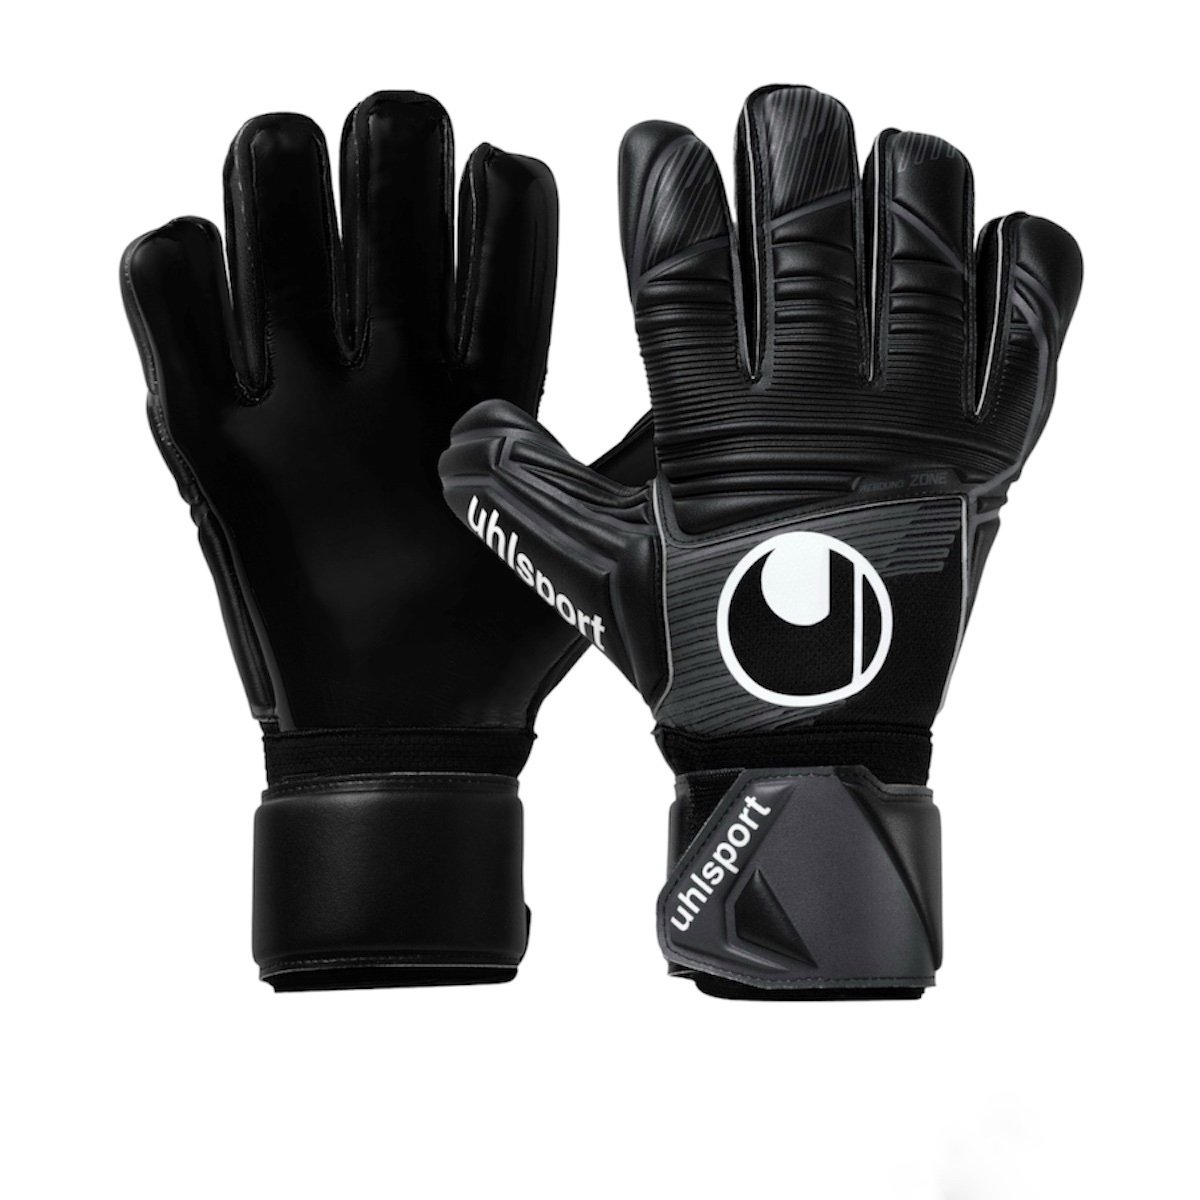 Вратарские перчатки Uhlsport Comfort ABSOLUTGRIP Classic Cut купить